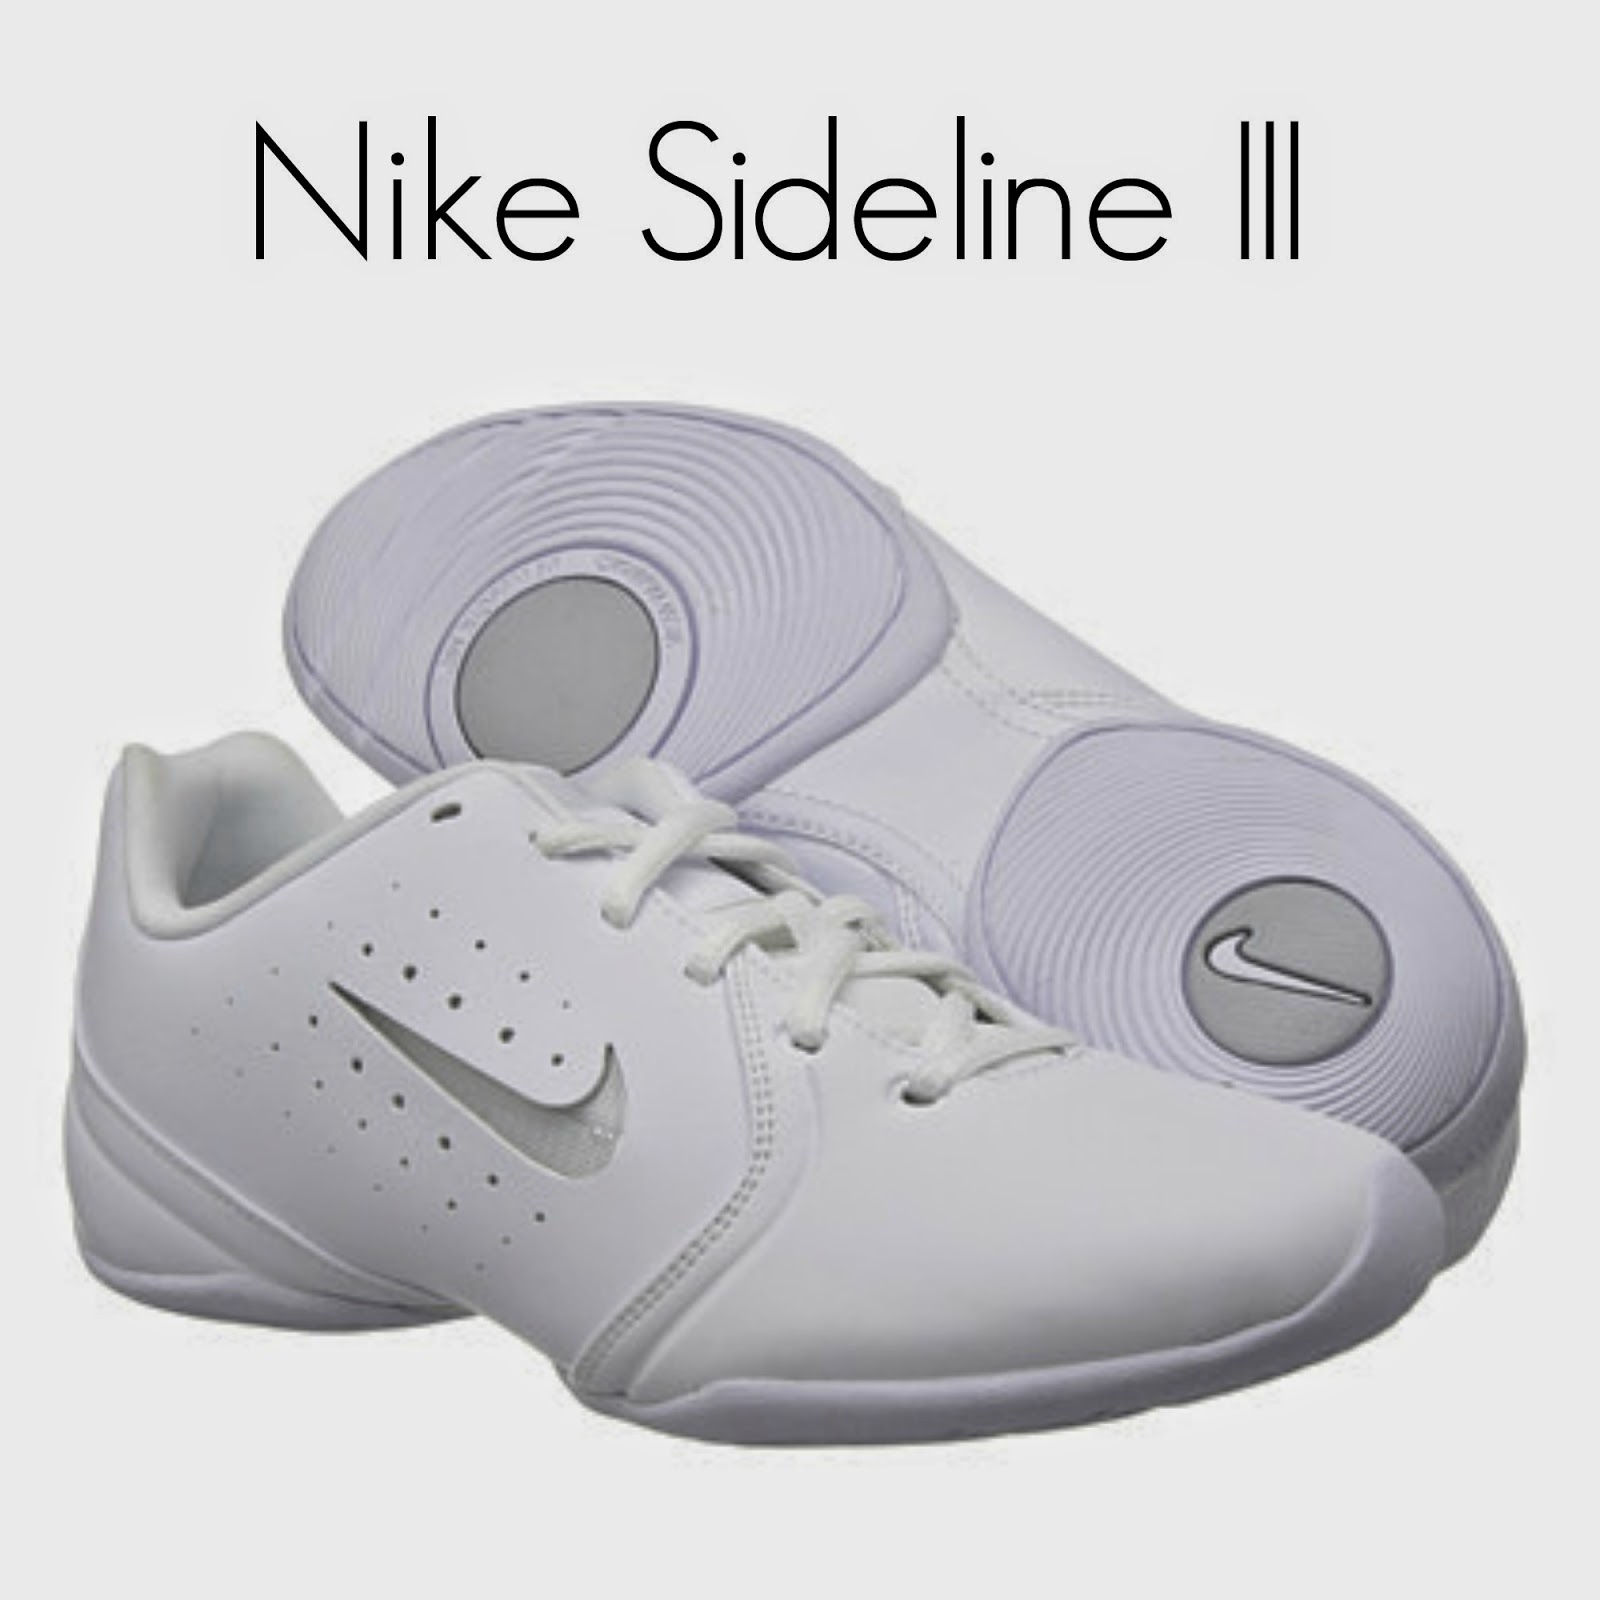 nike sideline iii cheer shoes